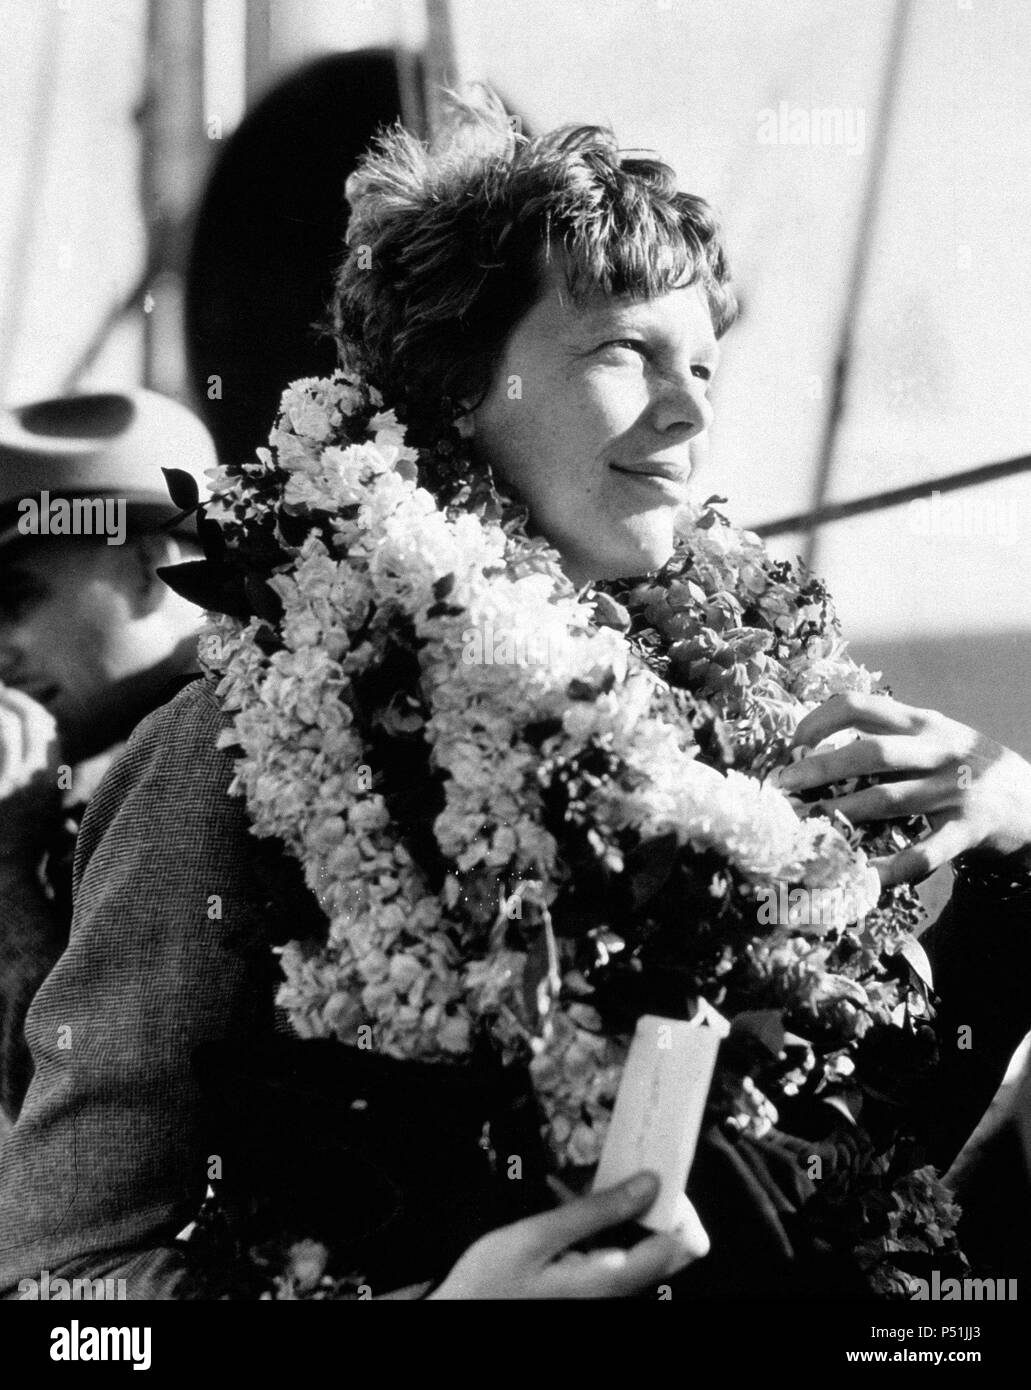 Amelia Earhart, célèbre aviatrix arrive par bateau à Honolulu. Elle a été fraîches à leur arrivée. Banque D'Images